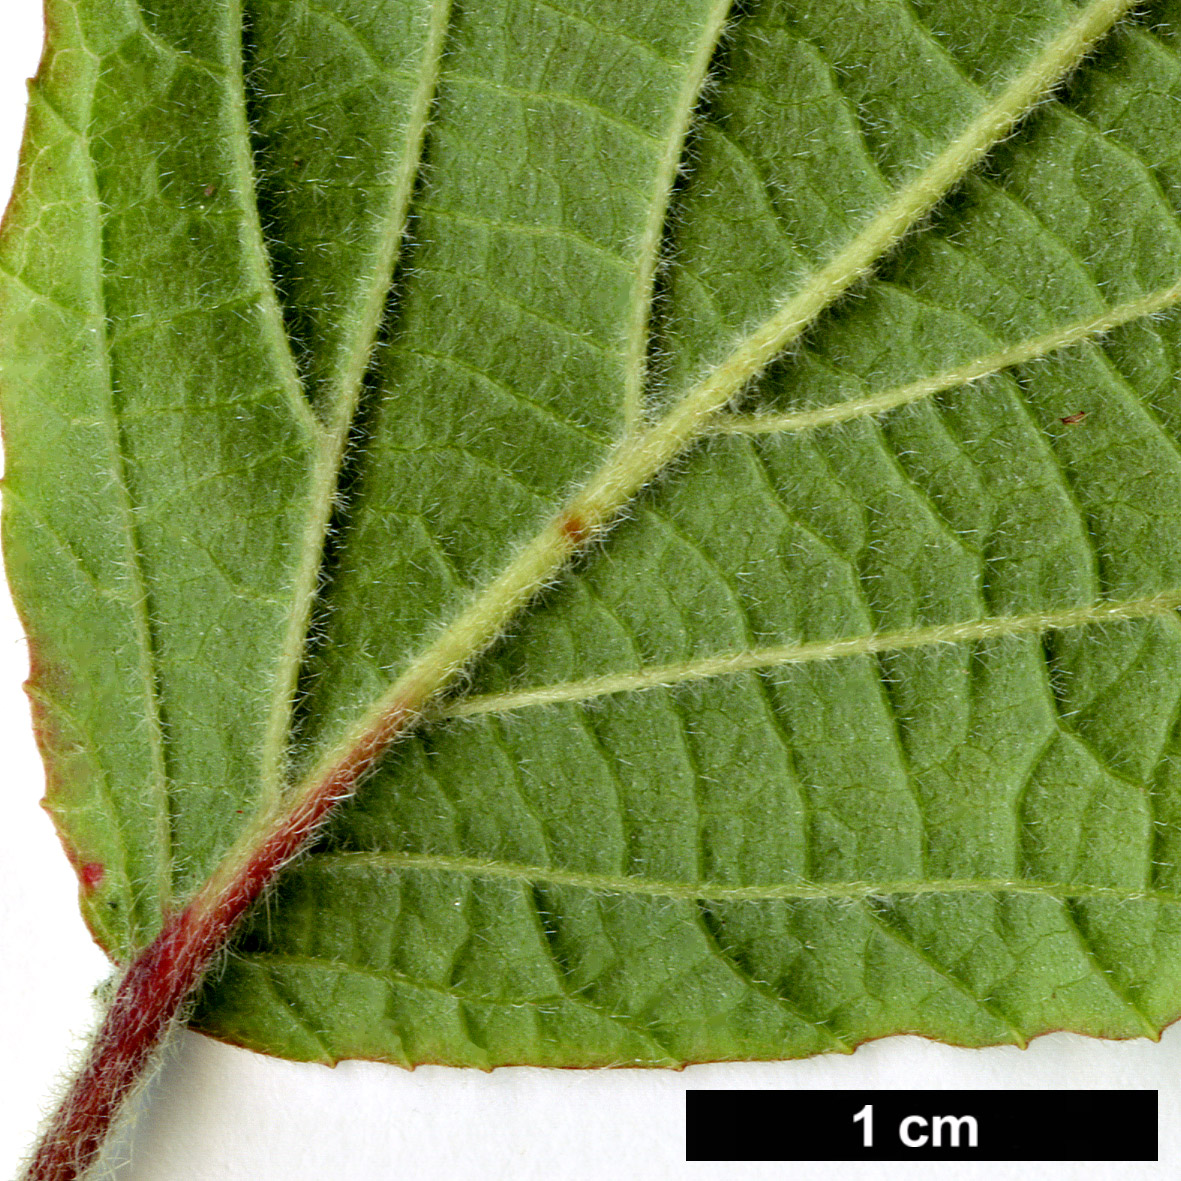 High resolution image: Family: Adoxaceae - Genus: Viburnum - Taxon: corylifolium